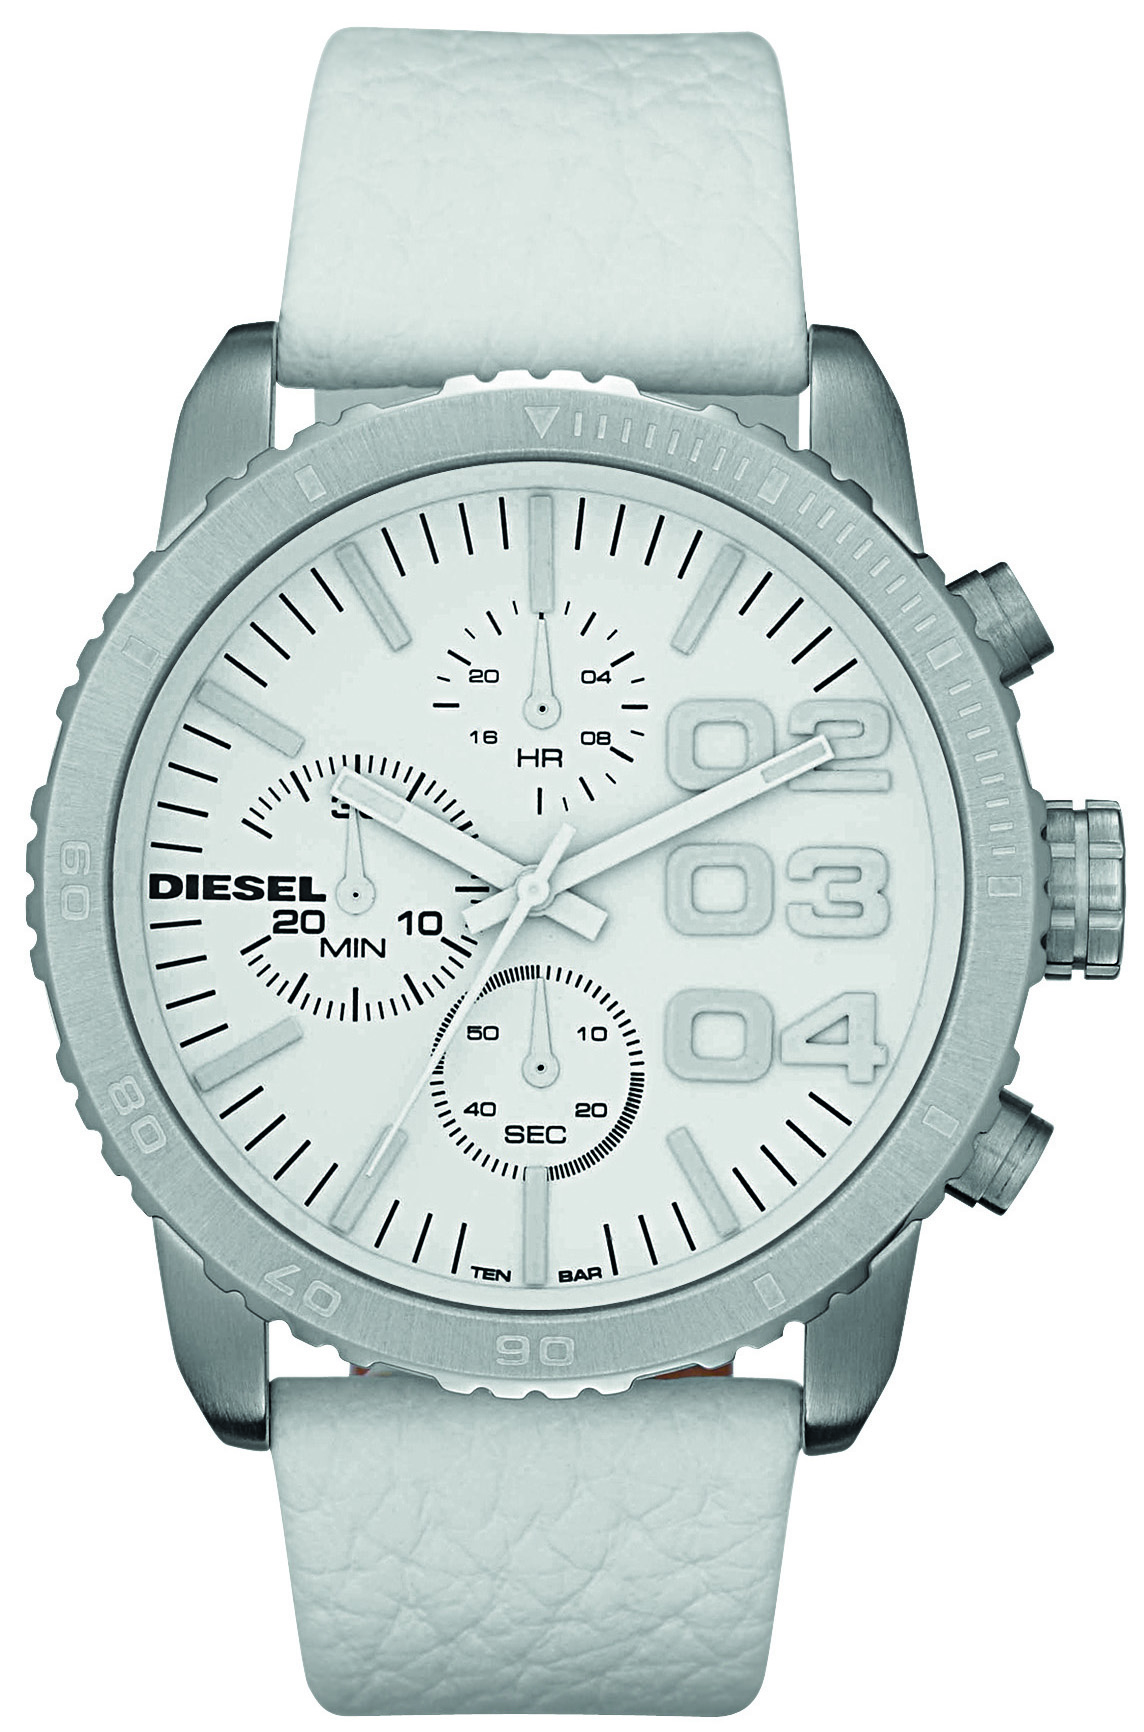 Diesel DZ5330 - ANALOG White Watch • Watchard.com